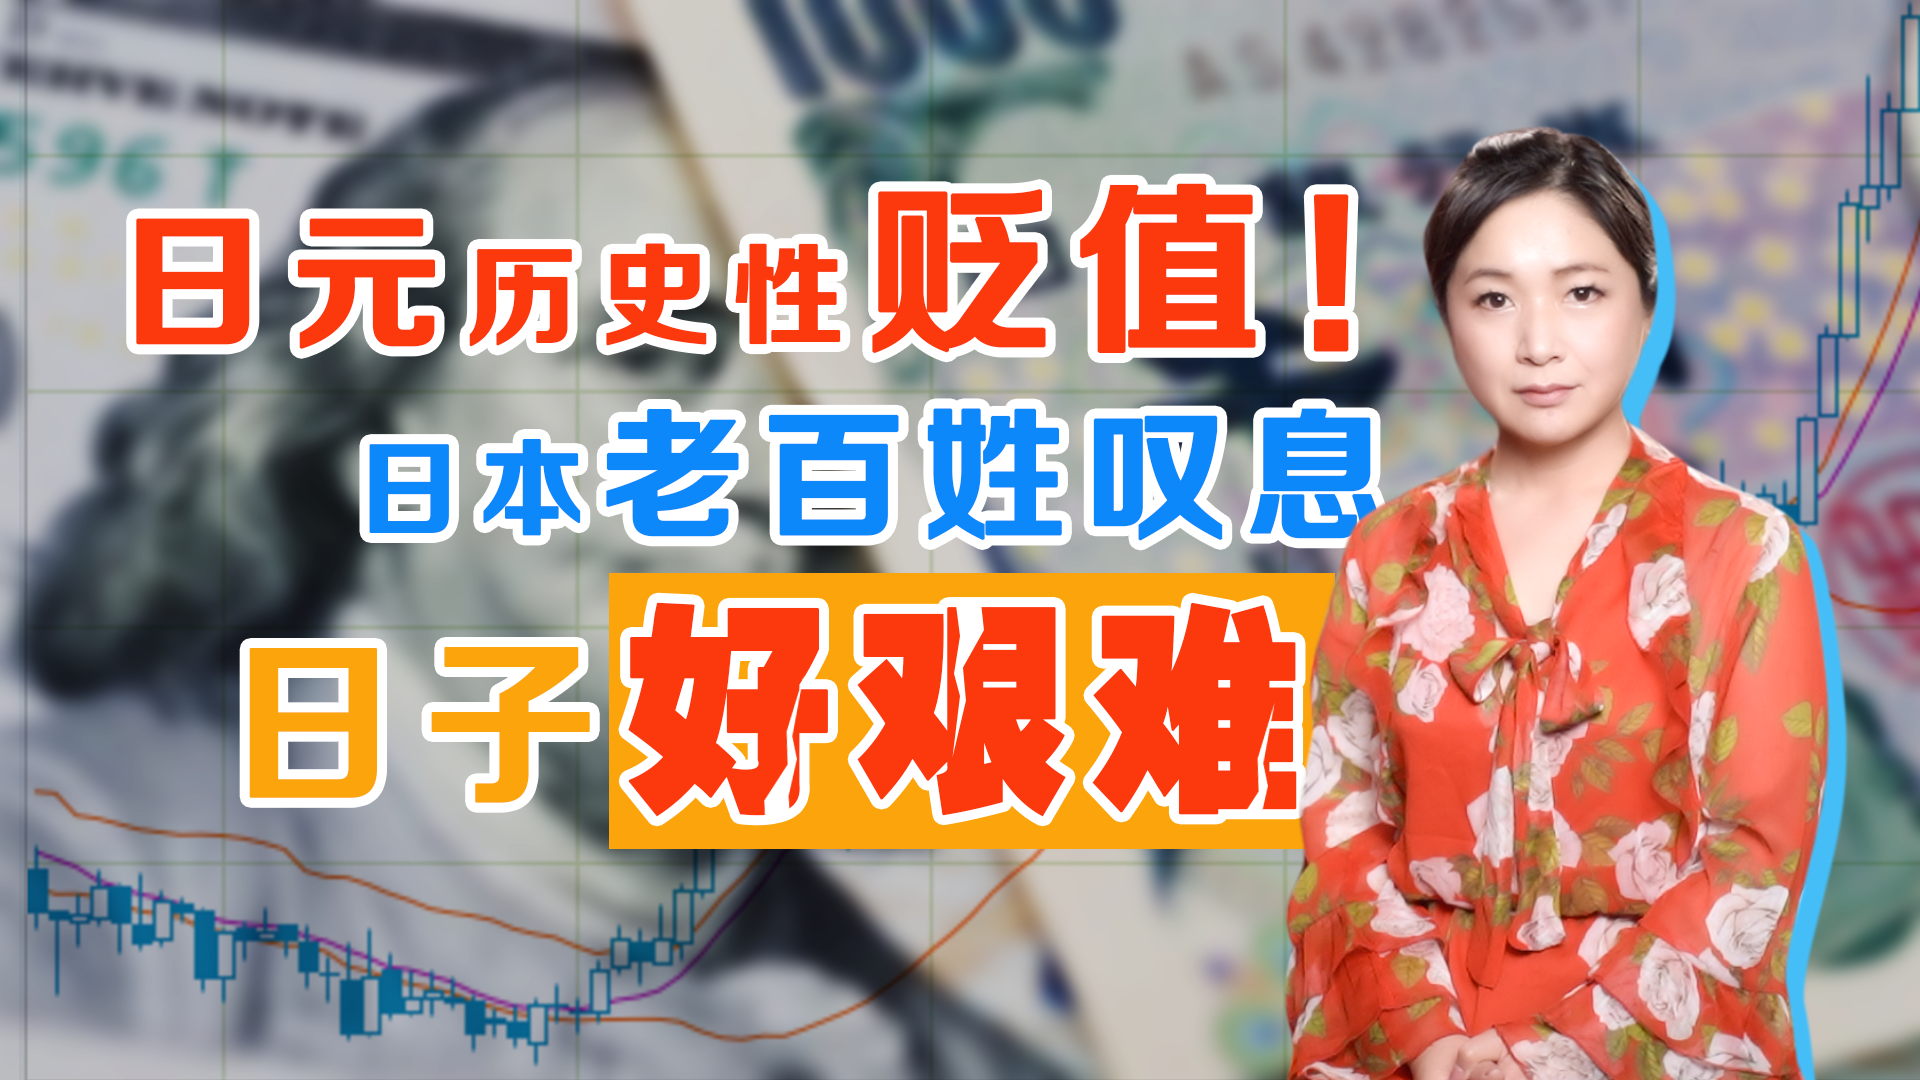 日元贬值，外国人动了抄底这个“廉价”国家的念头 | 自由微信 | FreeWeChat